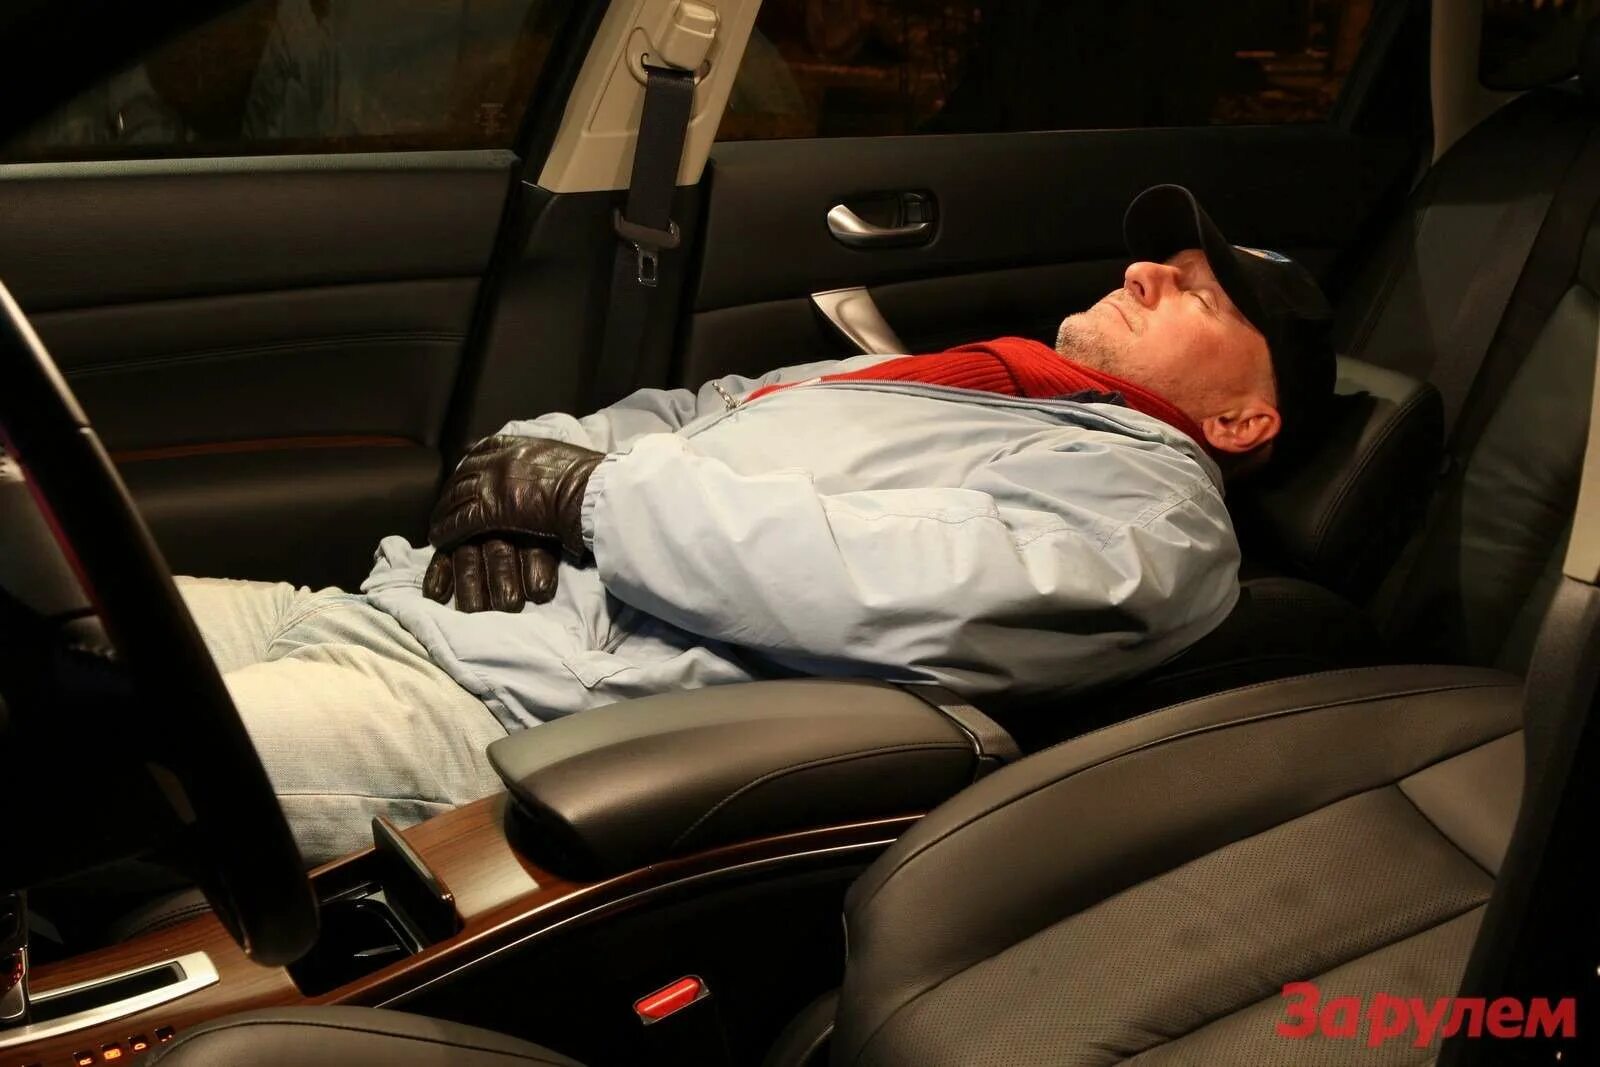 Сидеть на пассажирском сидении. Спящий человек в машине. Спать в автомобиле. Ночевать в машине.